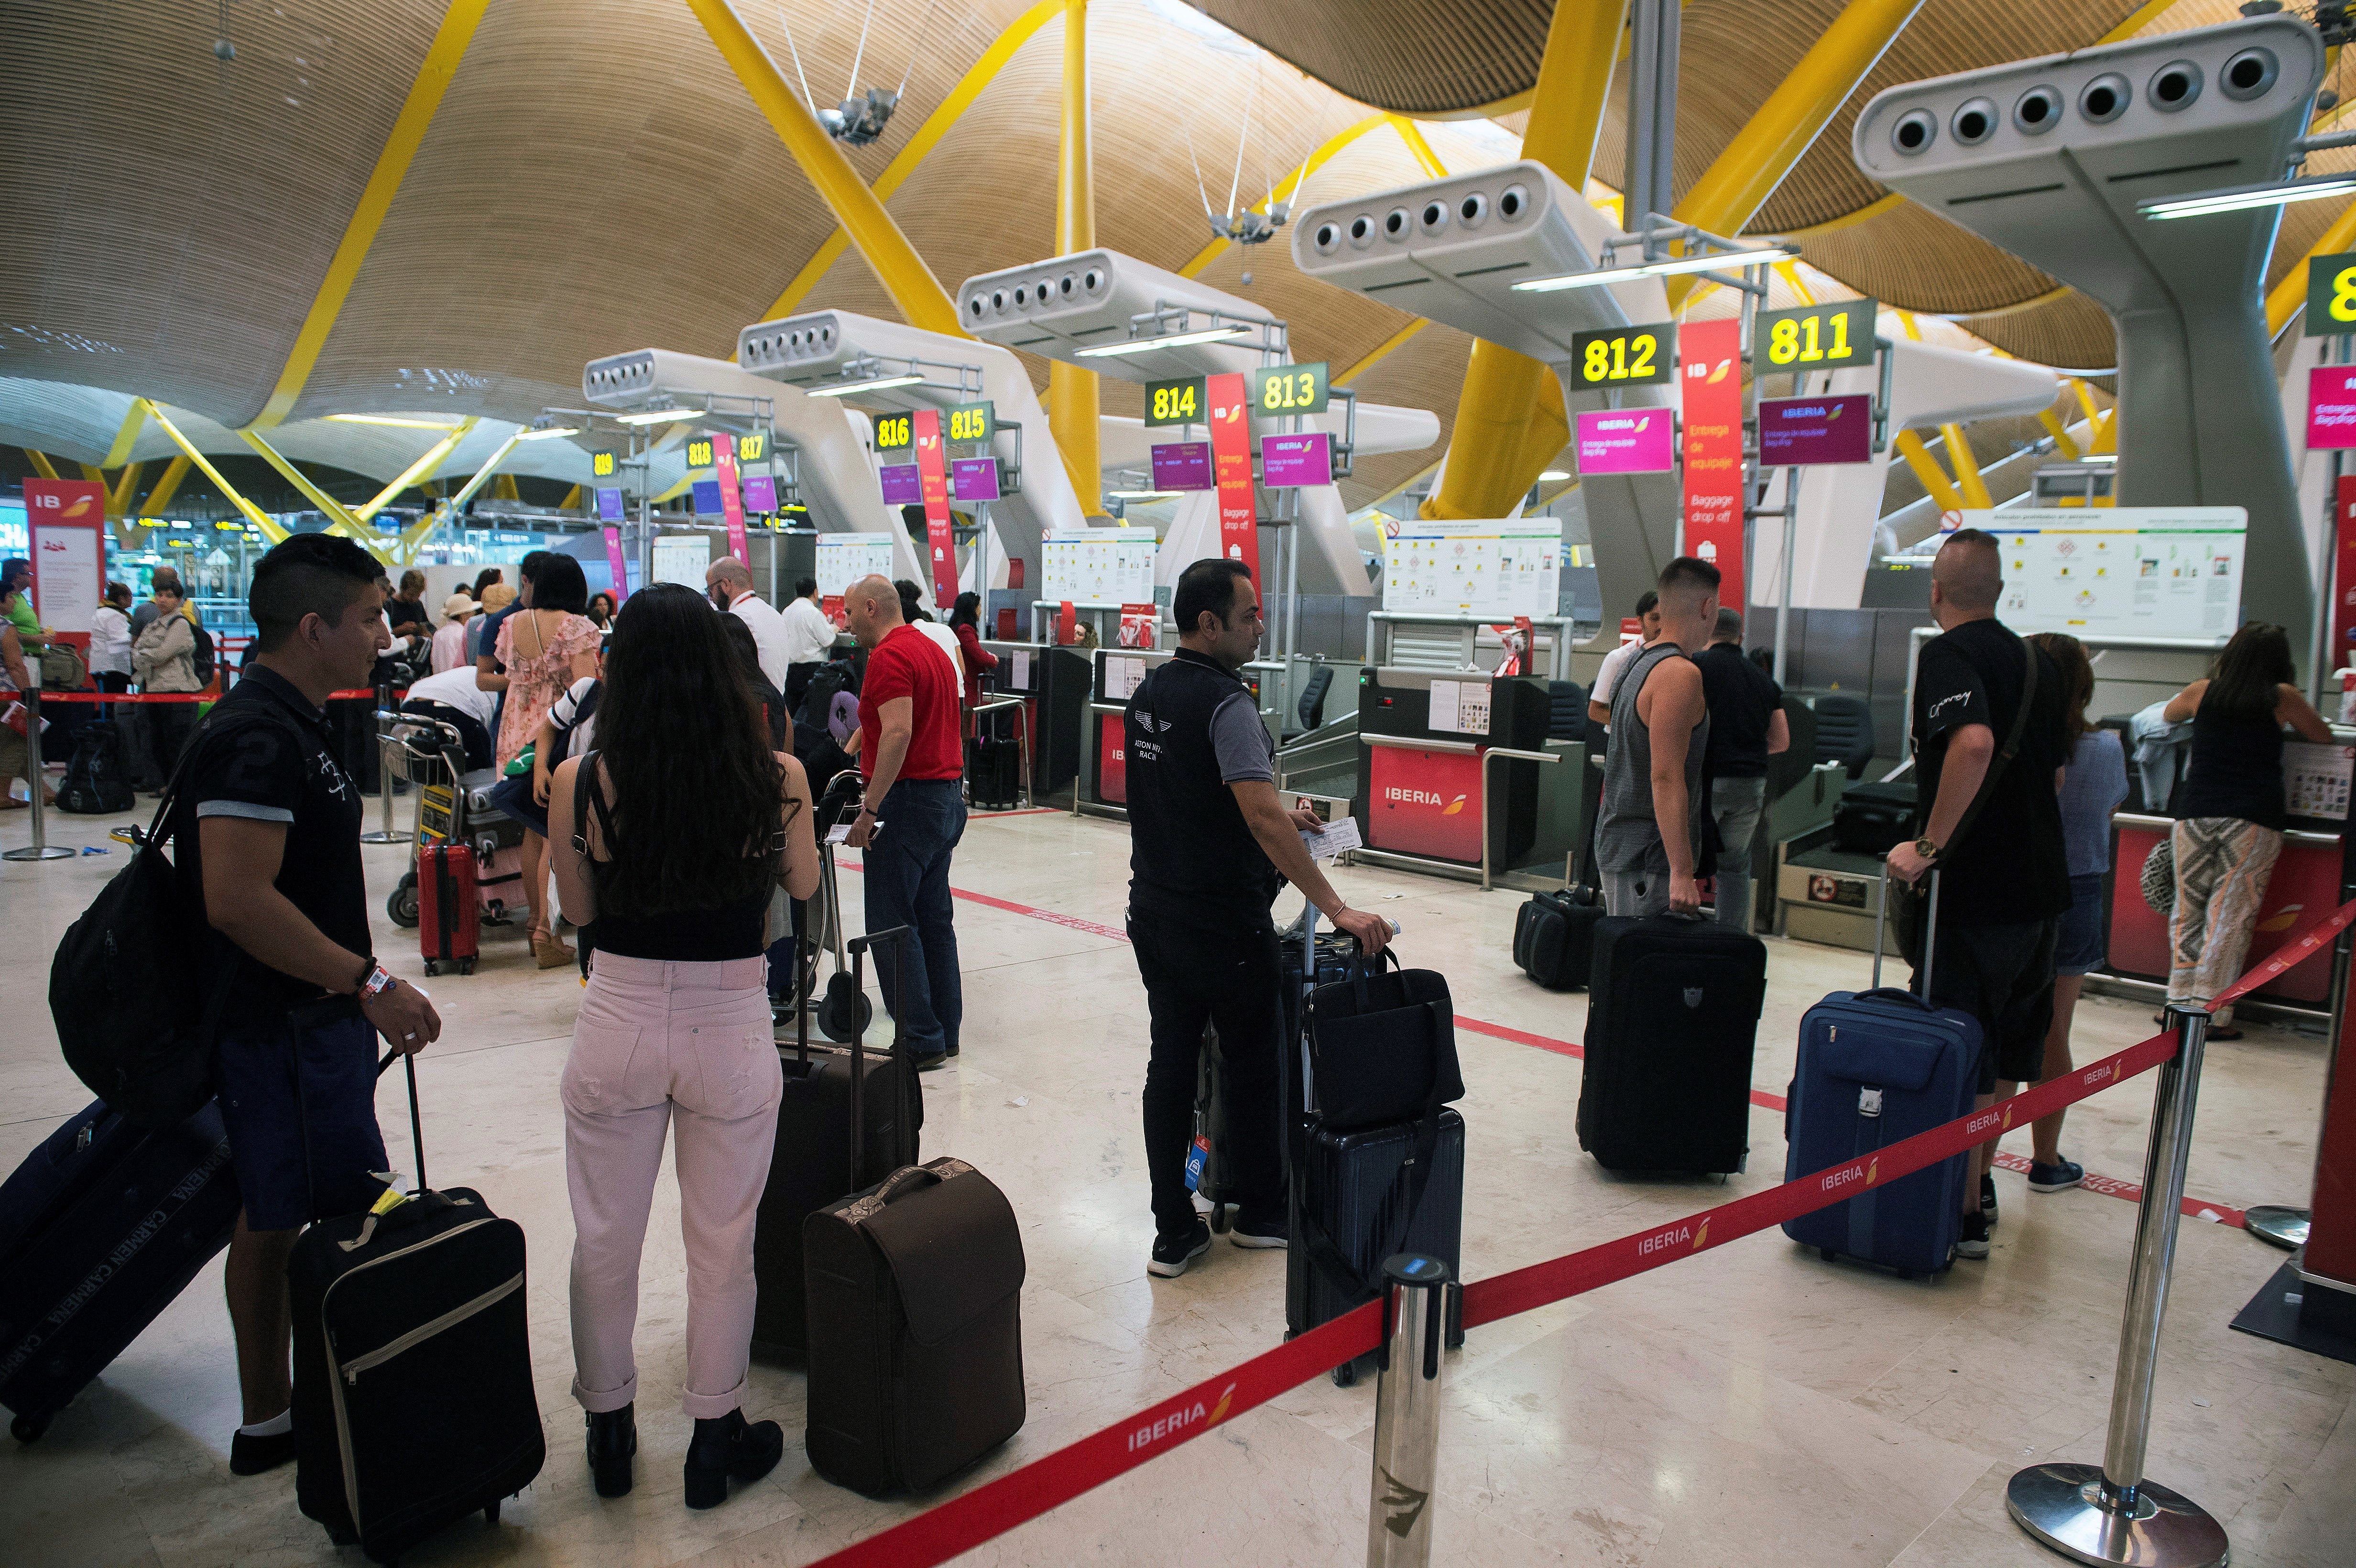 iajeros ante los mostradores de facturación de la terminal 4 del aeropuerto de Barajas al inicio de las vacaciones del mes de agosto.